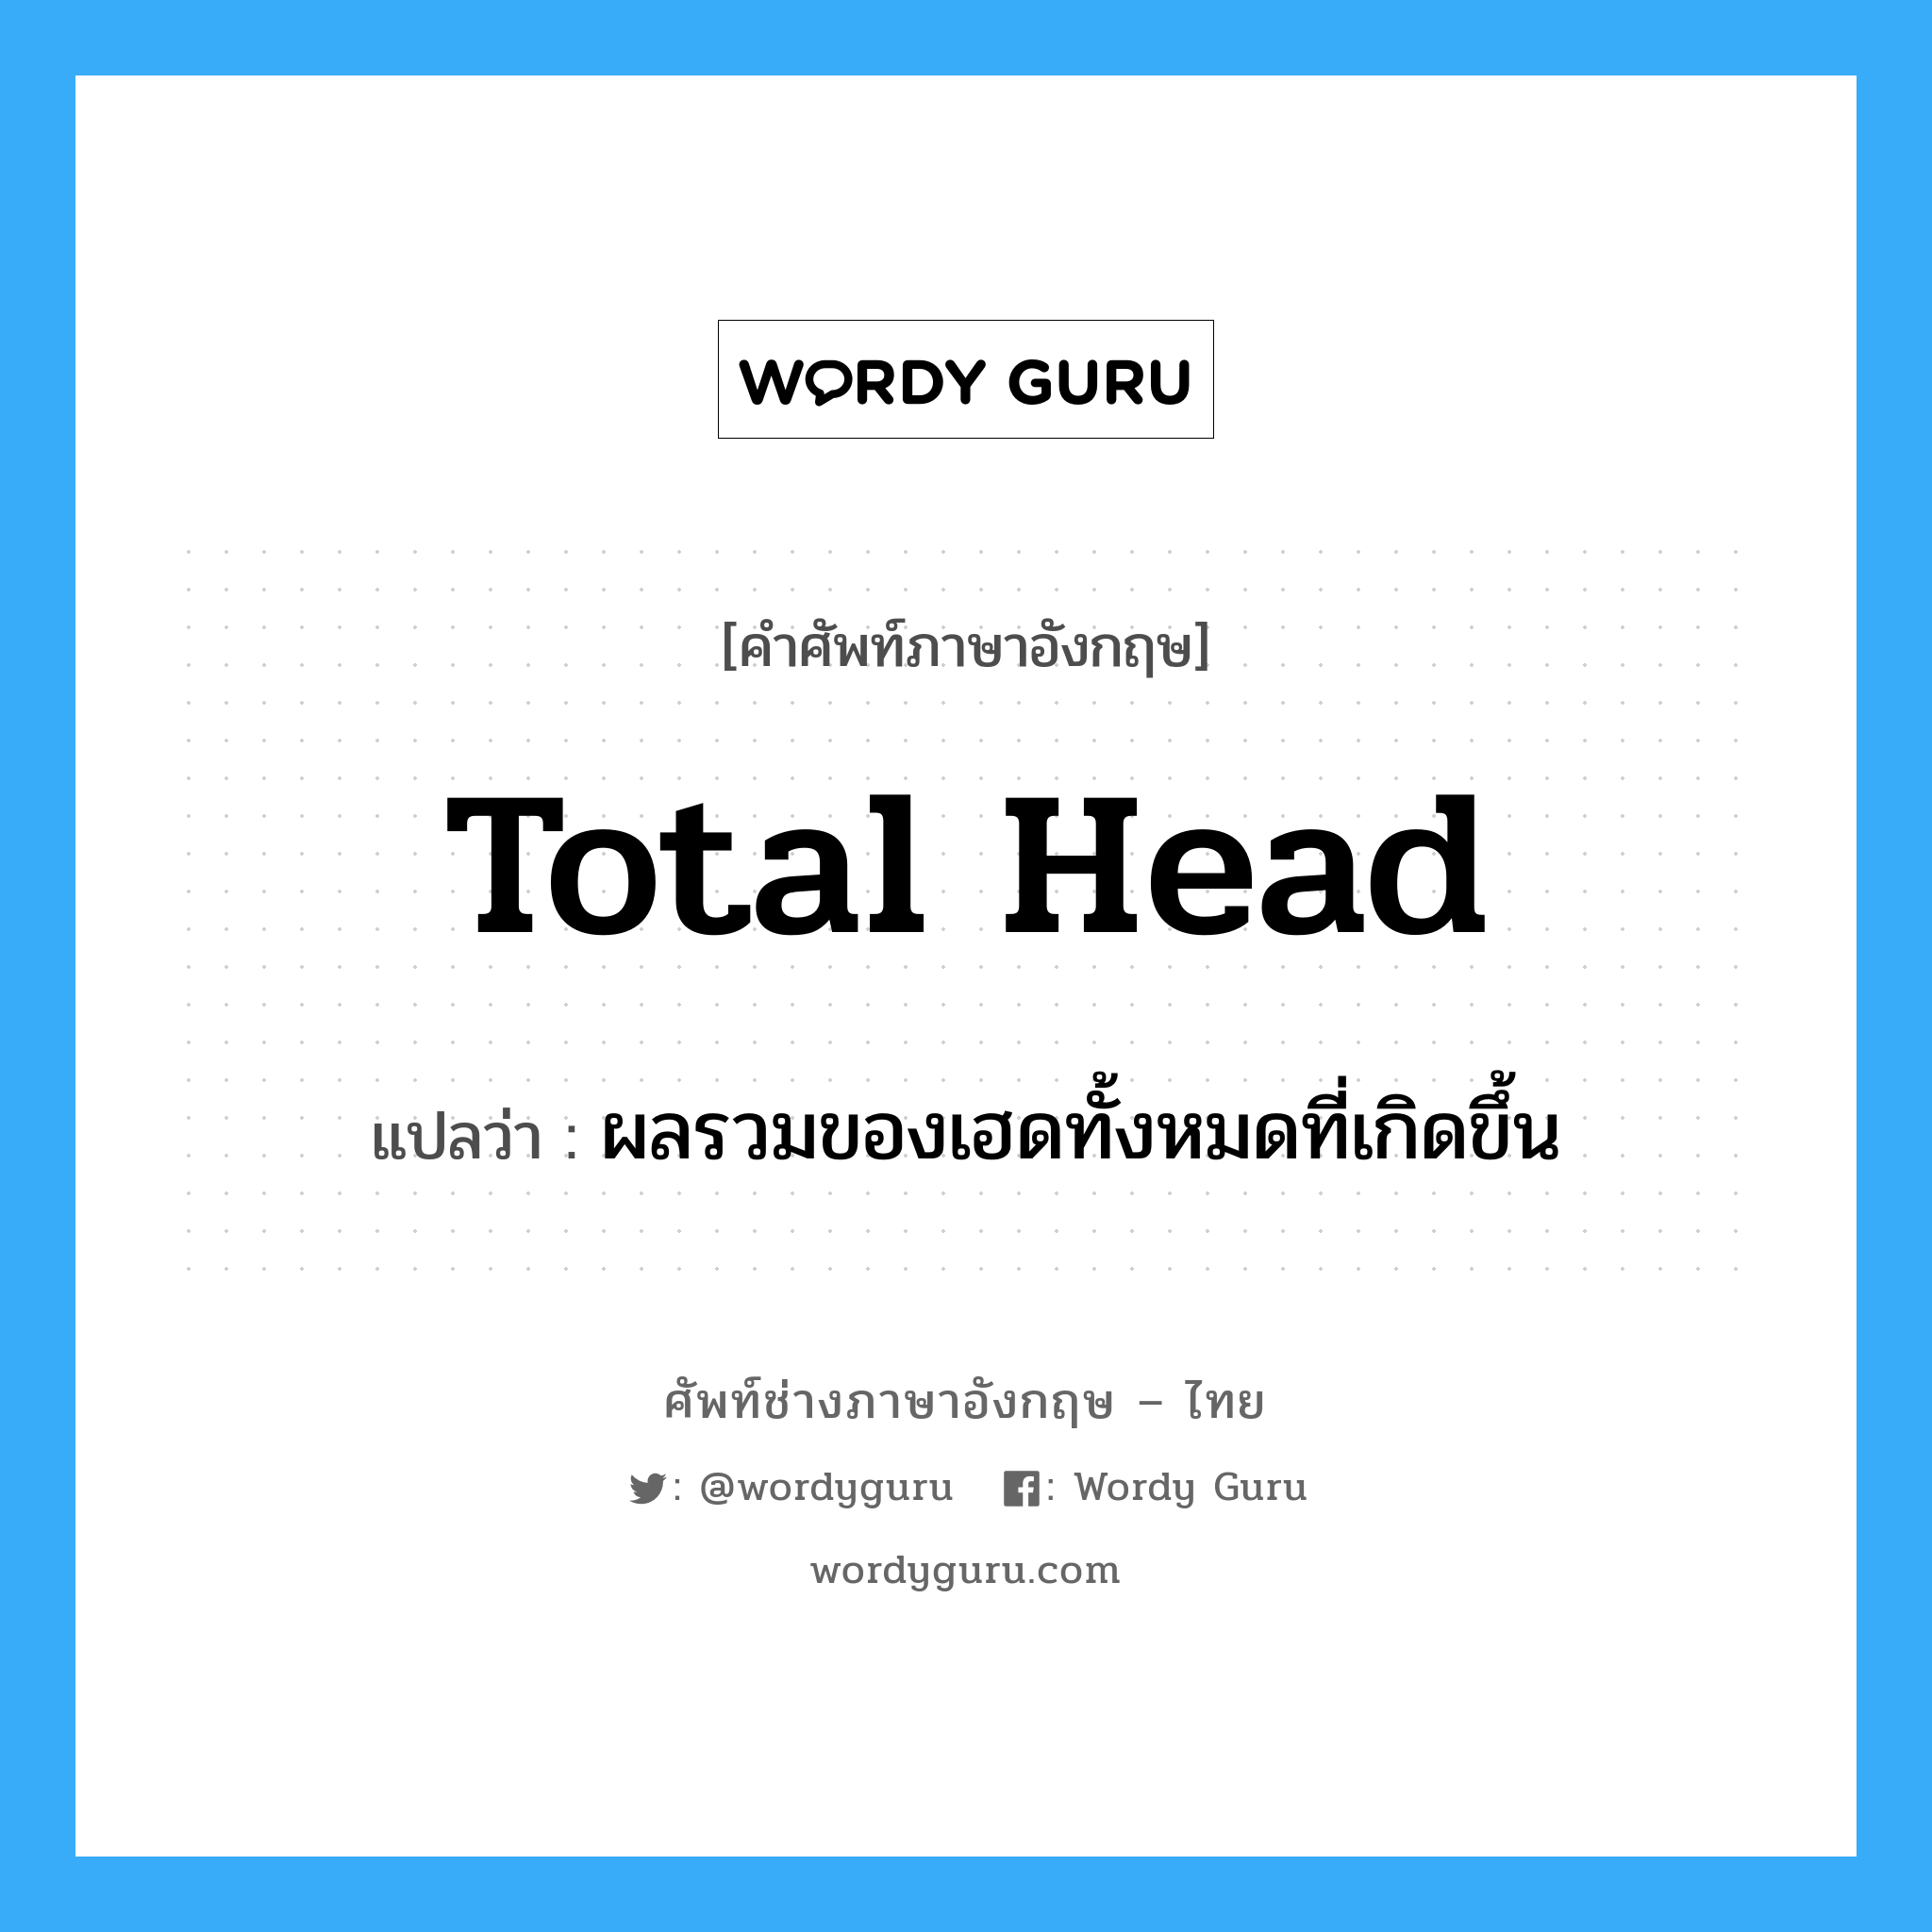 total head แปลว่า?, คำศัพท์ช่างภาษาอังกฤษ - ไทย total head คำศัพท์ภาษาอังกฤษ total head แปลว่า ผลรวมของเฮดทั้งหมดที่เกิดขึ้น